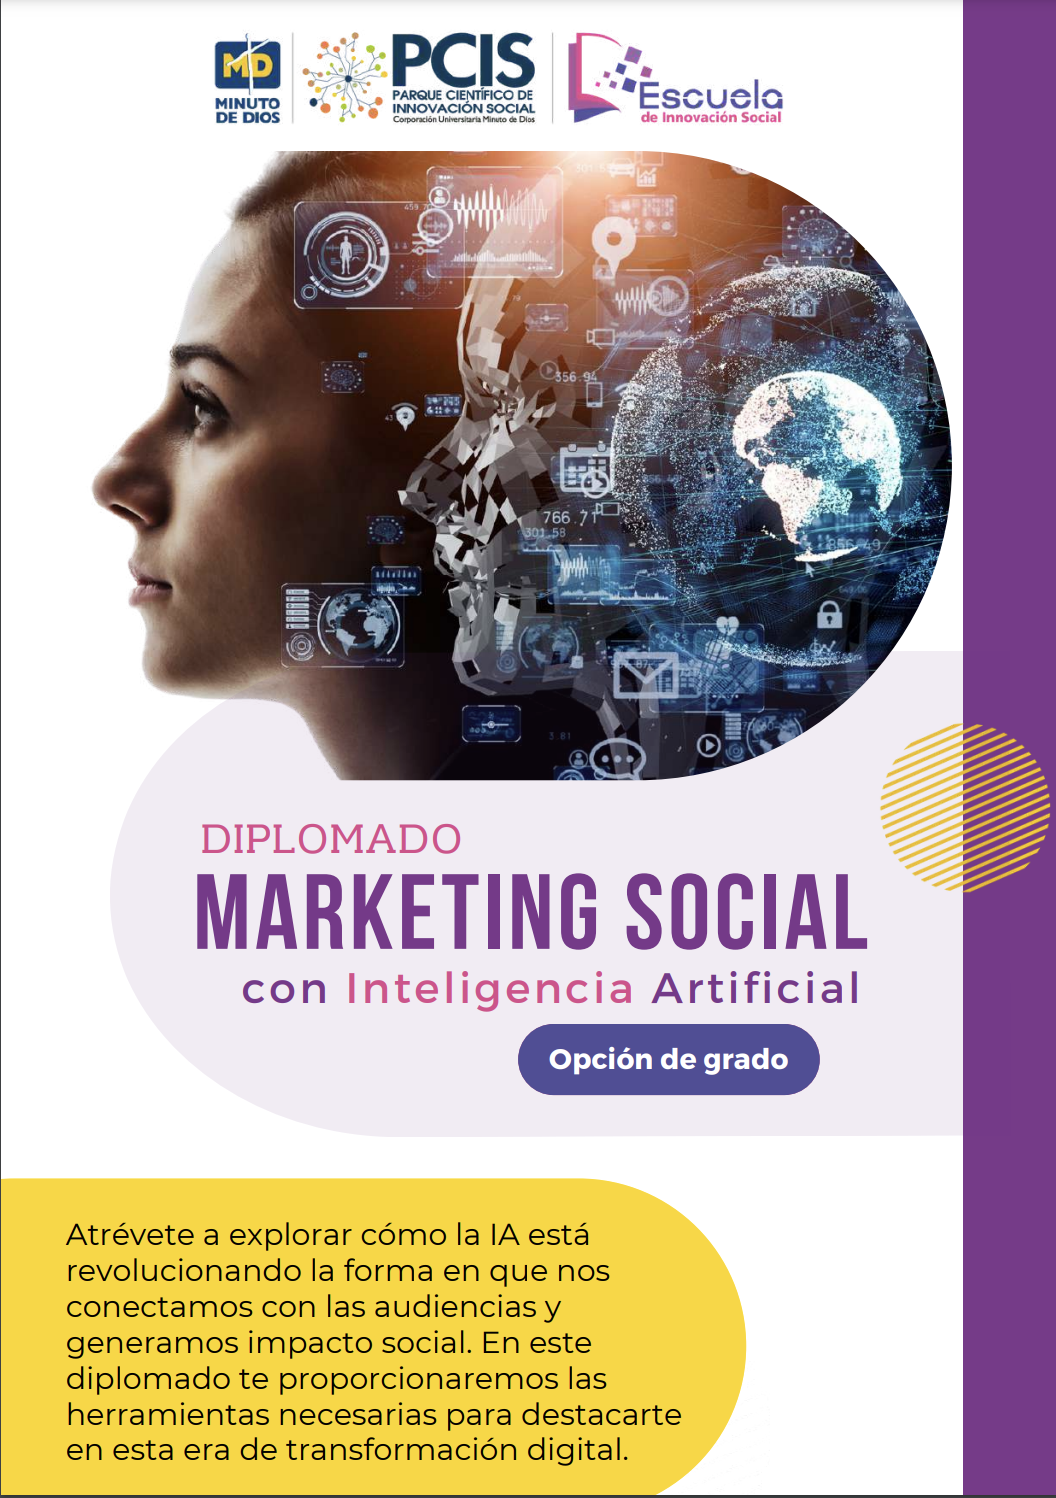 Diplomado como opción de grado: Marketing Social con Inteligencia Artificial, Escuela de Innovación Social - PCIS- UNIMINUTO